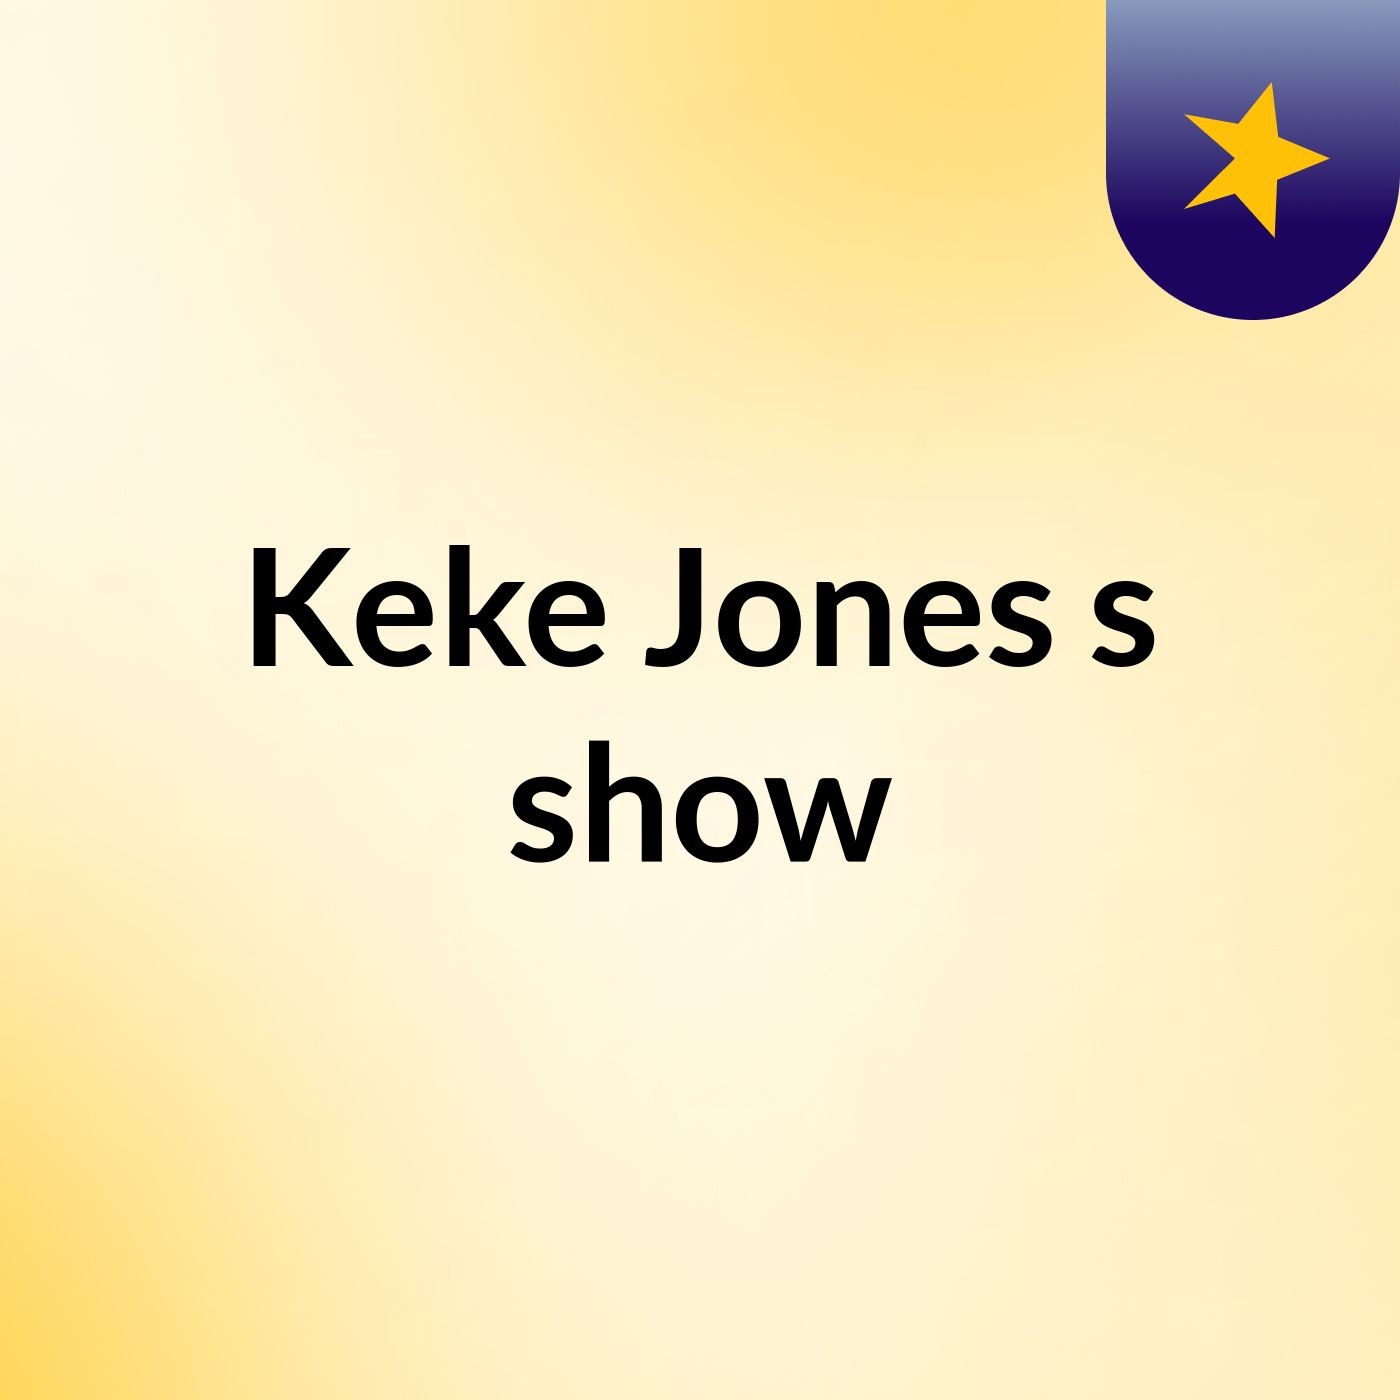 Keke Jones's show